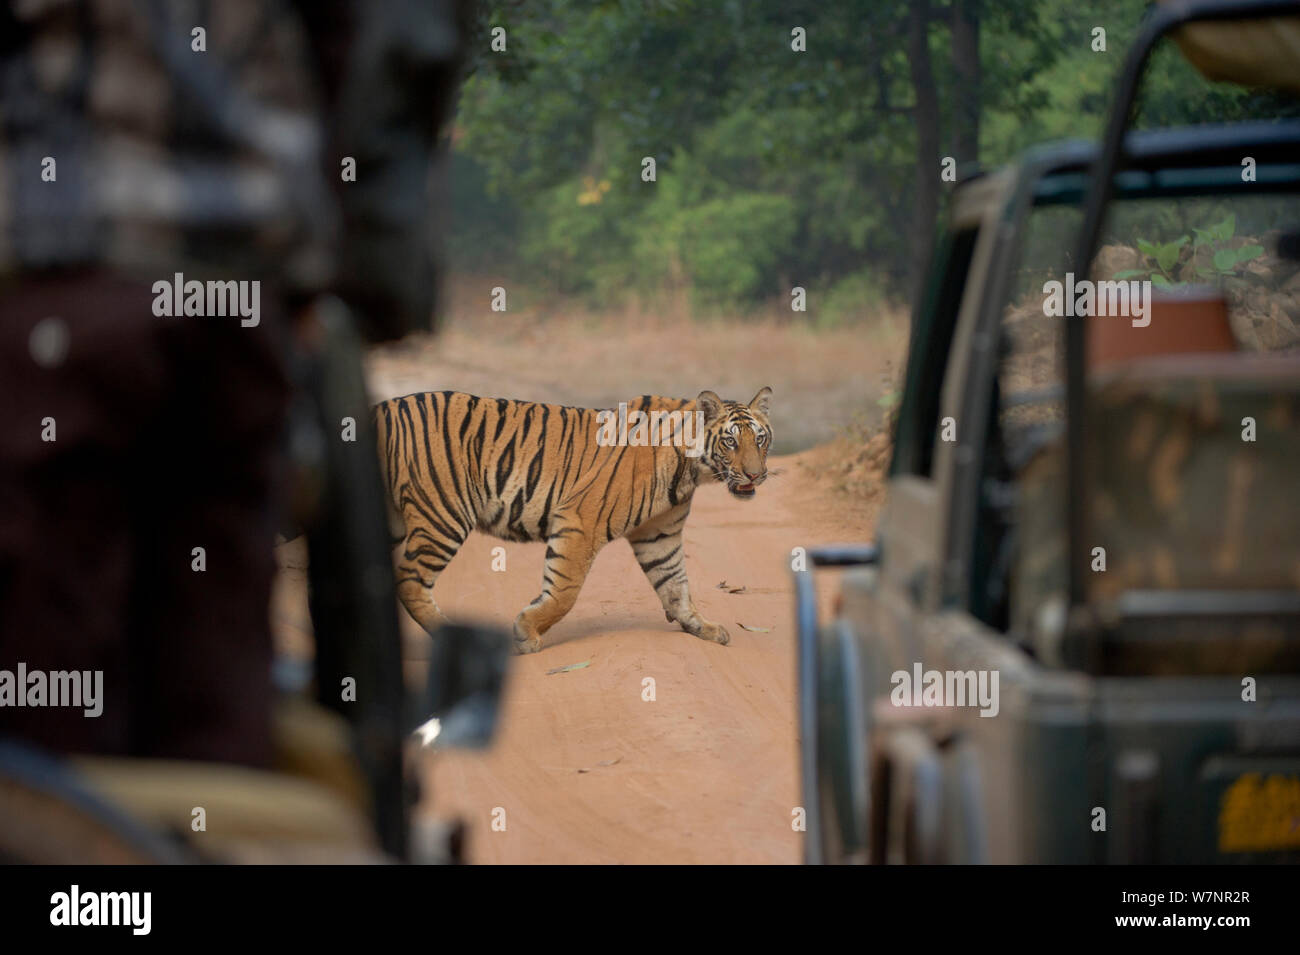 Tigre du Bengale (Panthera tigris) femelle, environ 10 à 14 mois, à la recherche de tourisme de jeeps. En voie de disparition. Bandhavgarh National Park, Inde. Les non-ex. Banque D'Images